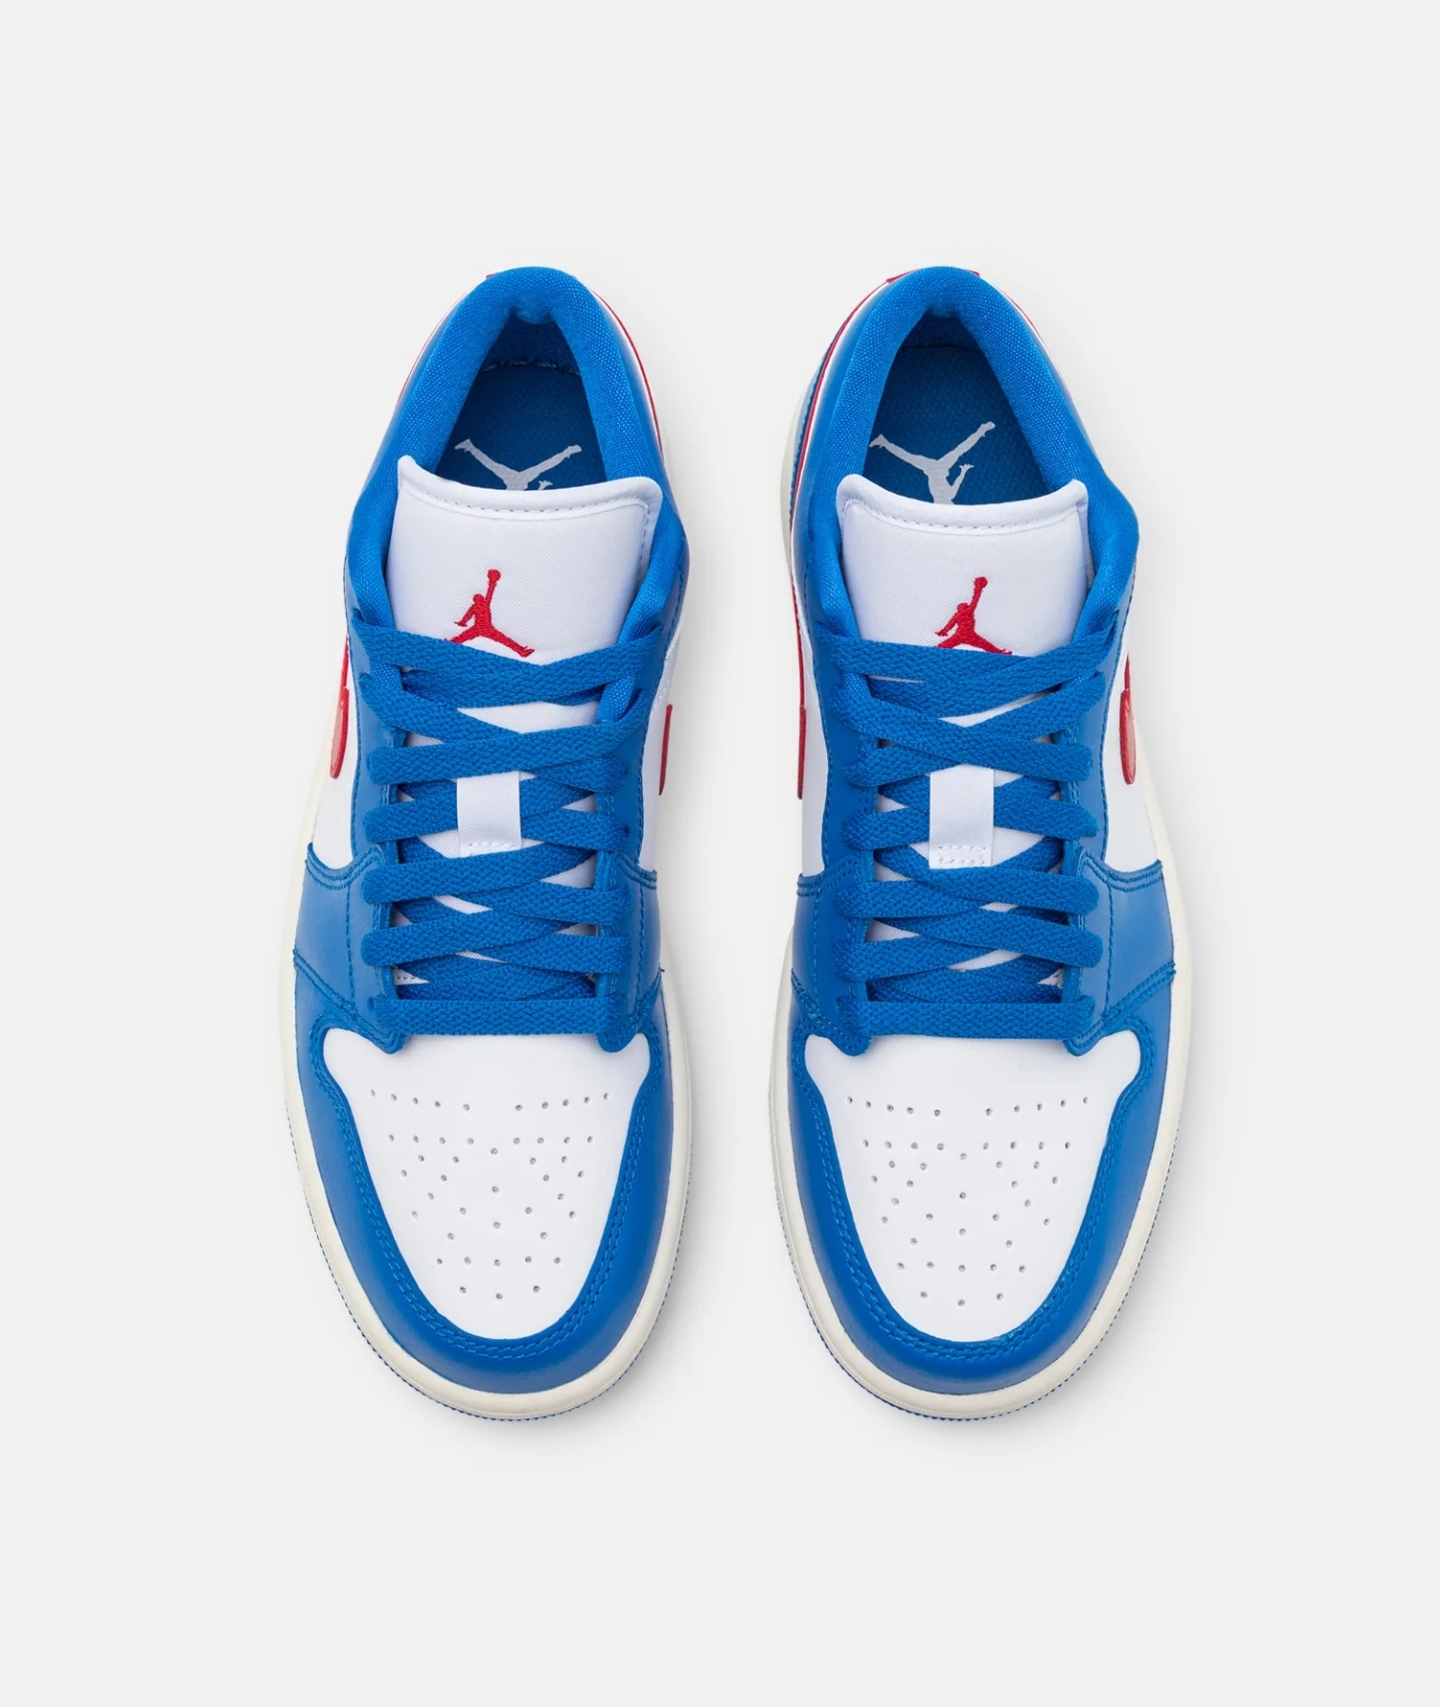 Jordan 1 Low Sport blue